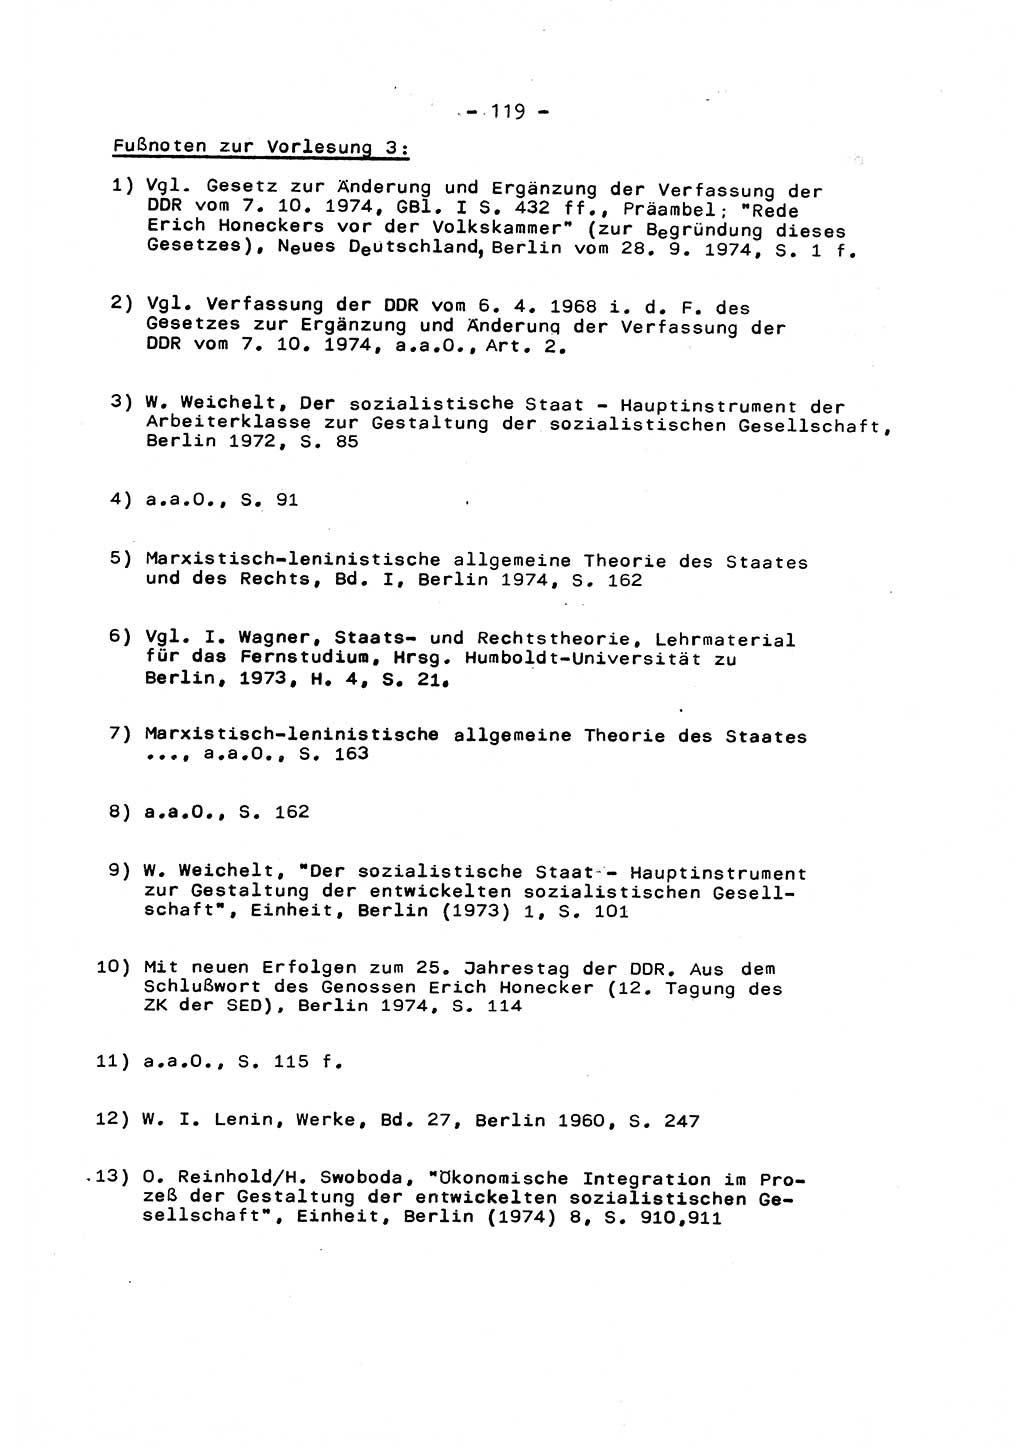 Marxistisch-leninistische Staats- und Rechtstheorie [Deutsche Demokratische Republik (DDR)] 1975, Seite 119 (ML St.-R.-Th. DDR 1975, S. 119)